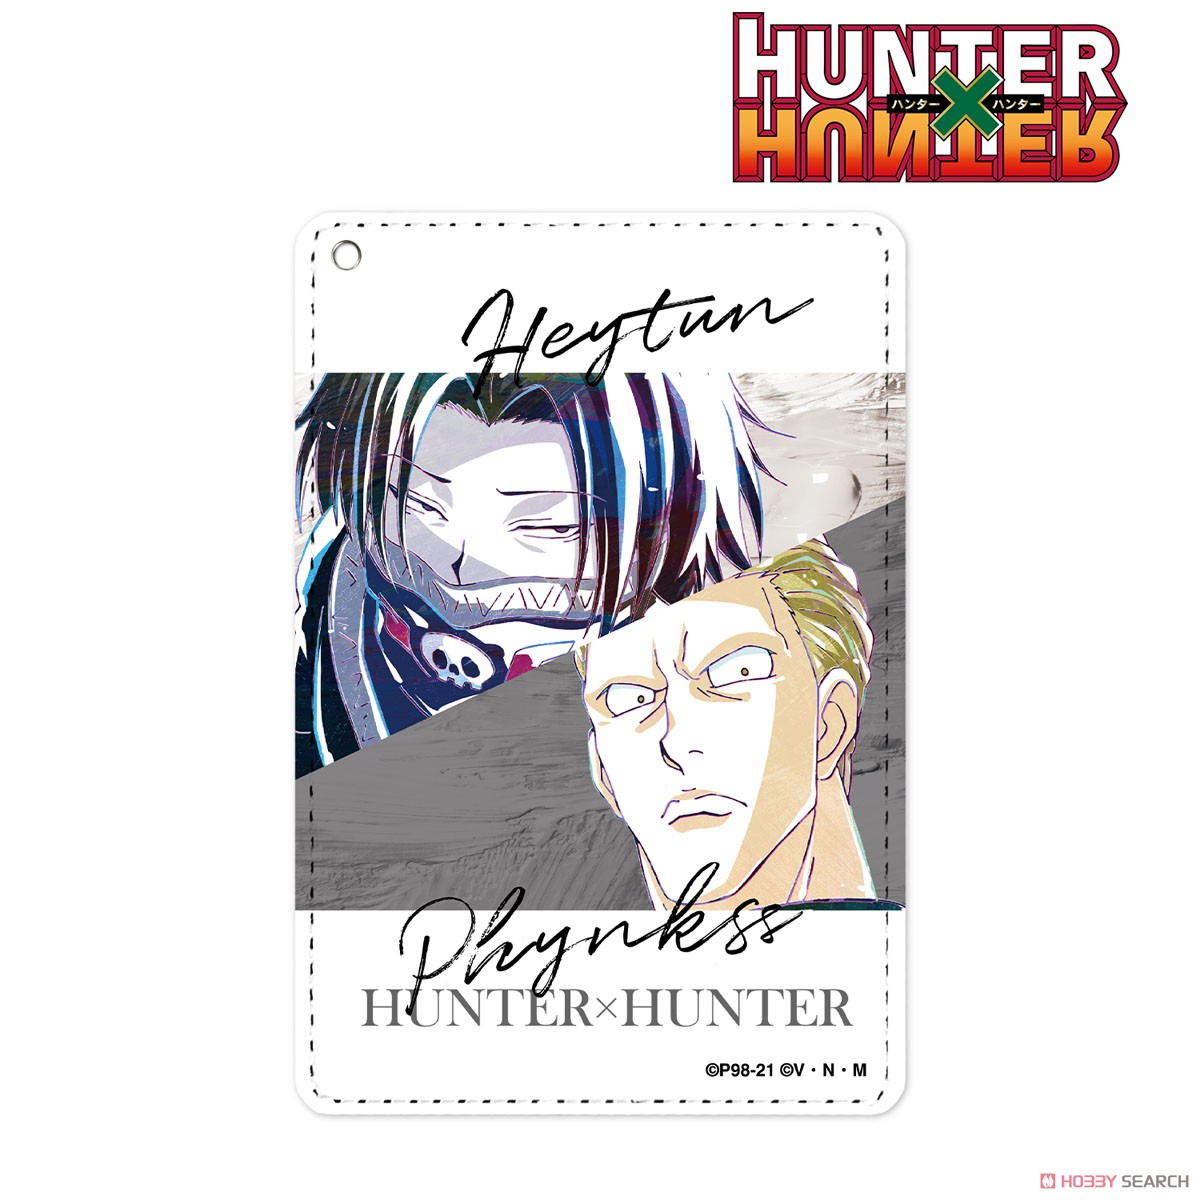 Feitan ~Hunter X Hunter  Hunter x hunter, Hunter anime, Anime